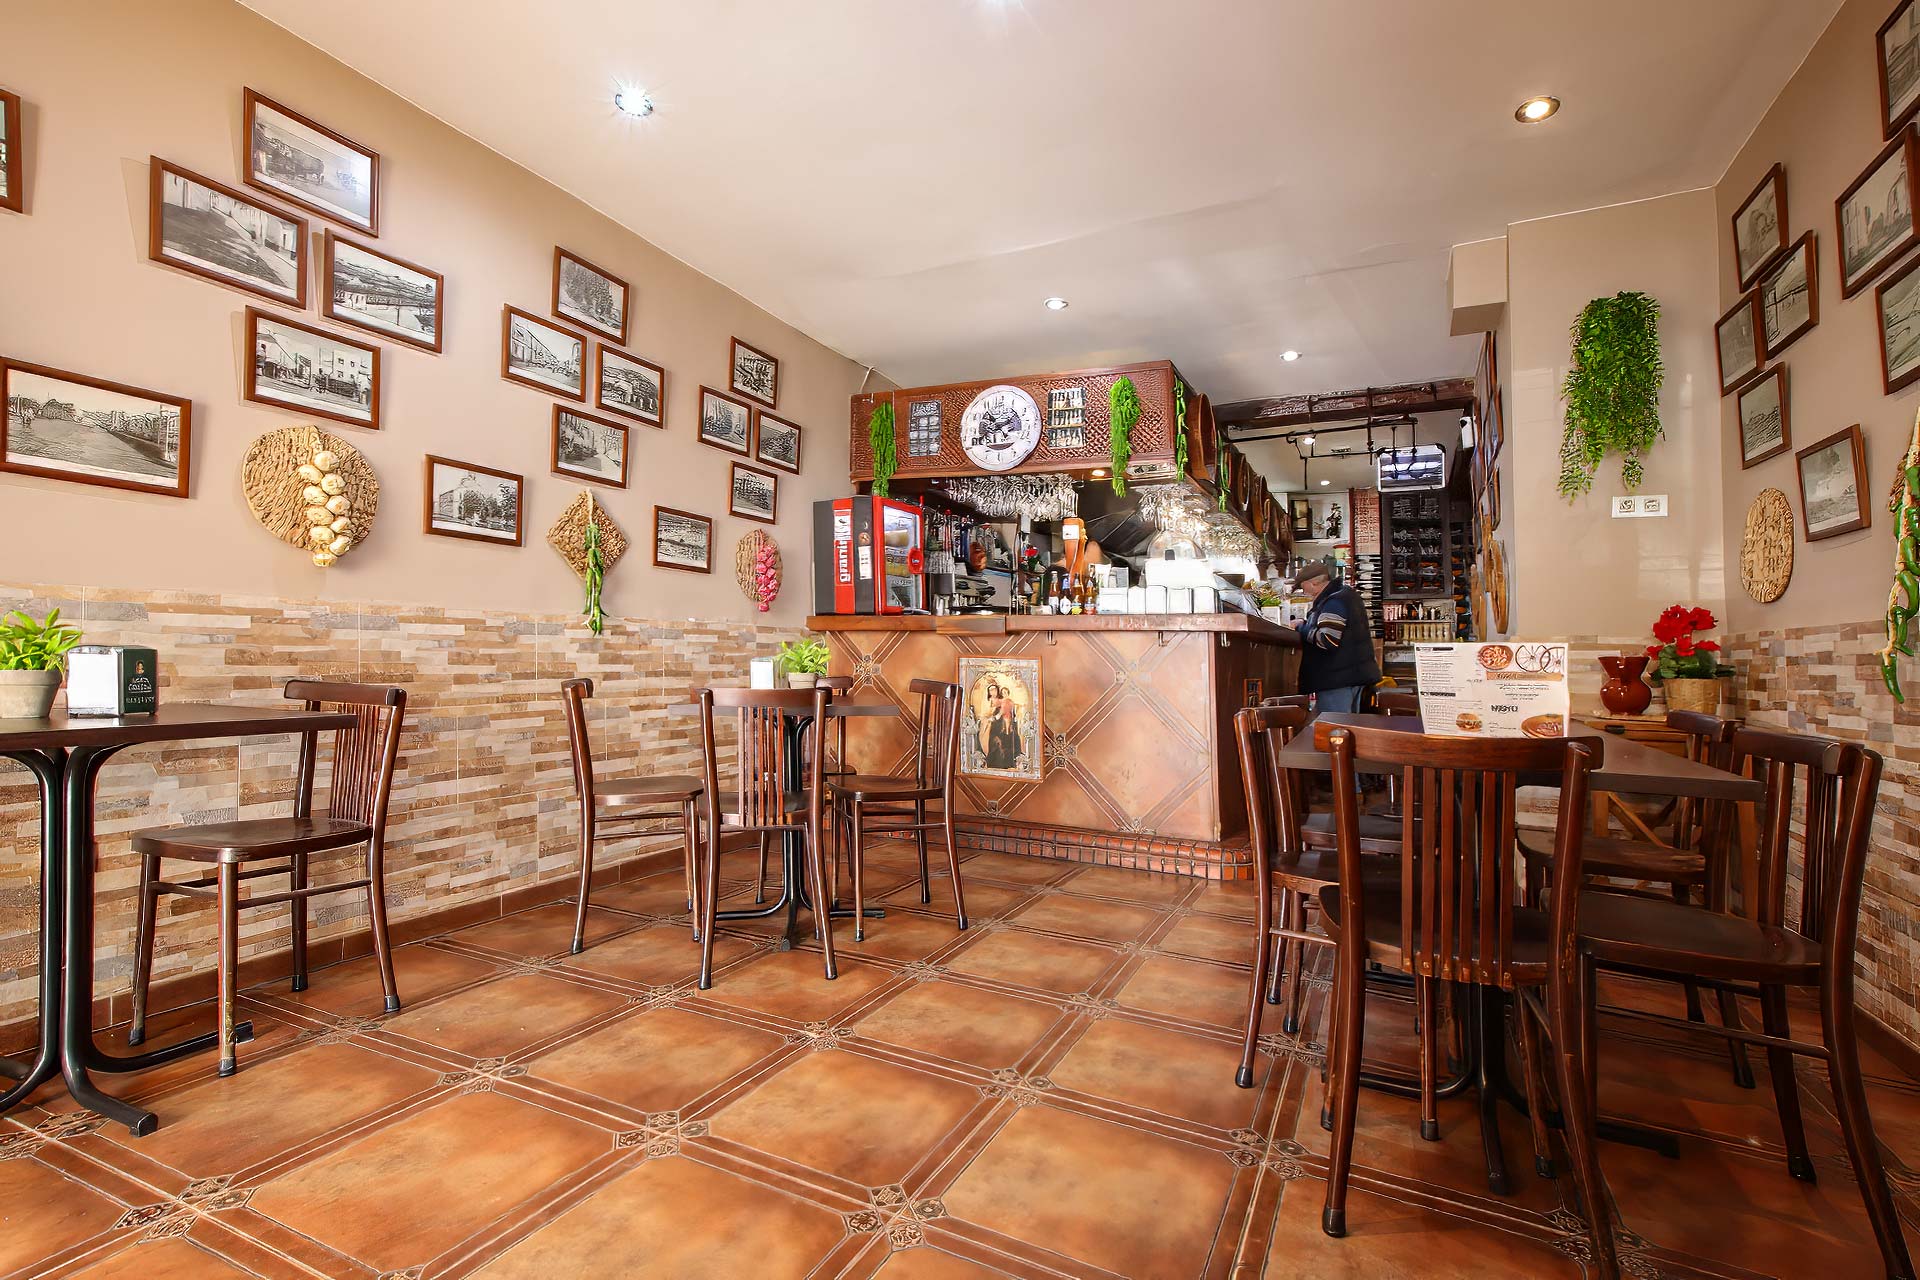 El interior del restaurante desprende un ambiente de bar de tapas español.